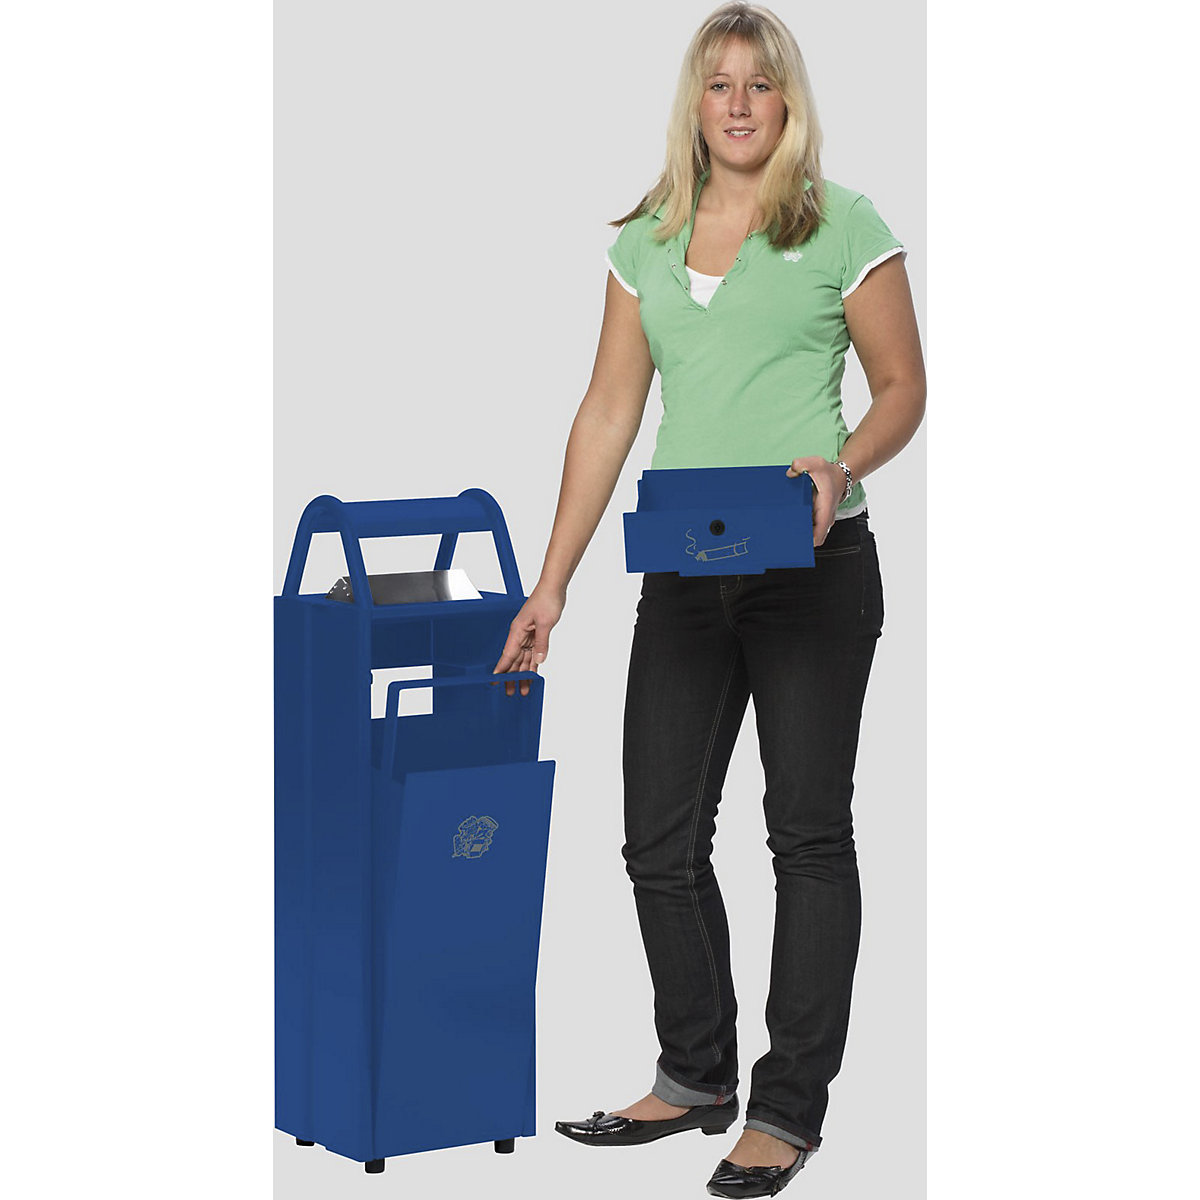 VAR – Sběrač odpadů s popelníkem a ochrannou stříškou proti dešti (Obrázek výrobku 4)